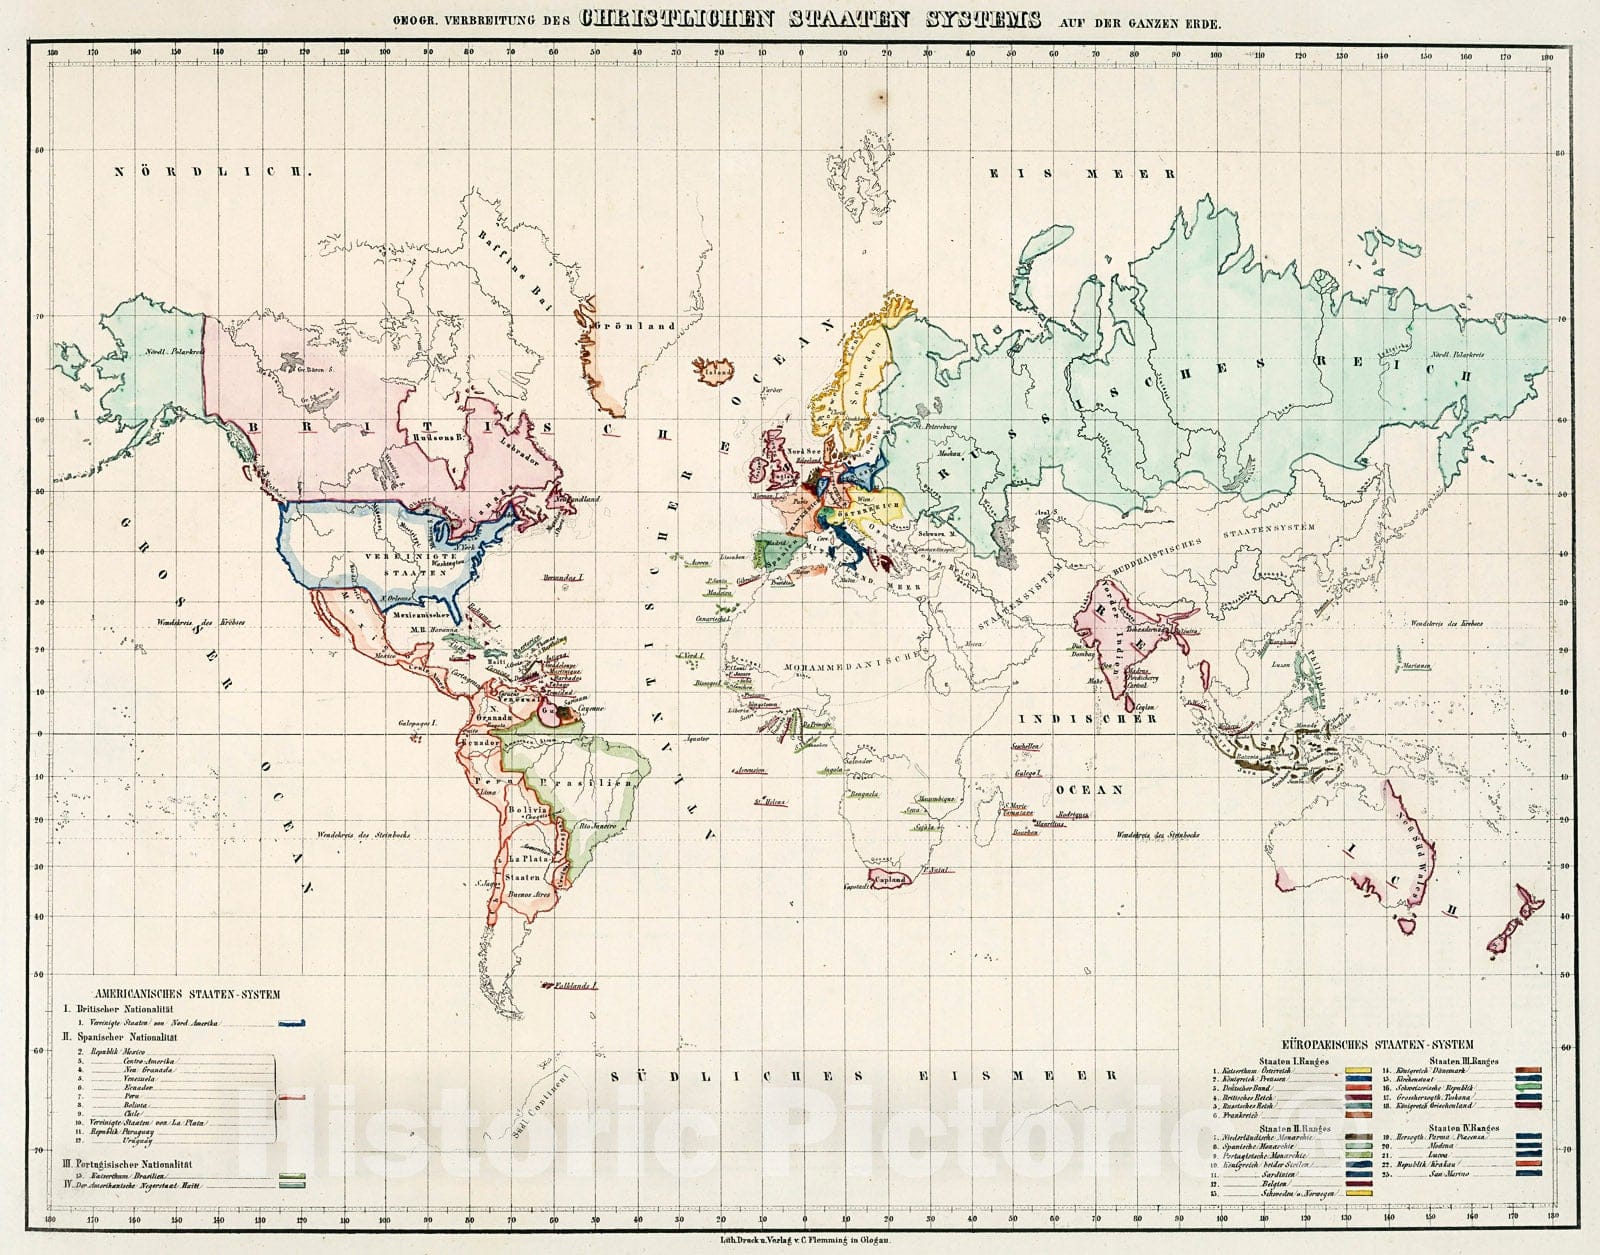 Historic Map : Geogr. Verbreitung des Christlichen Staaten Systems auf der Ganzen Erde., 1846, Vintage Wall Decor